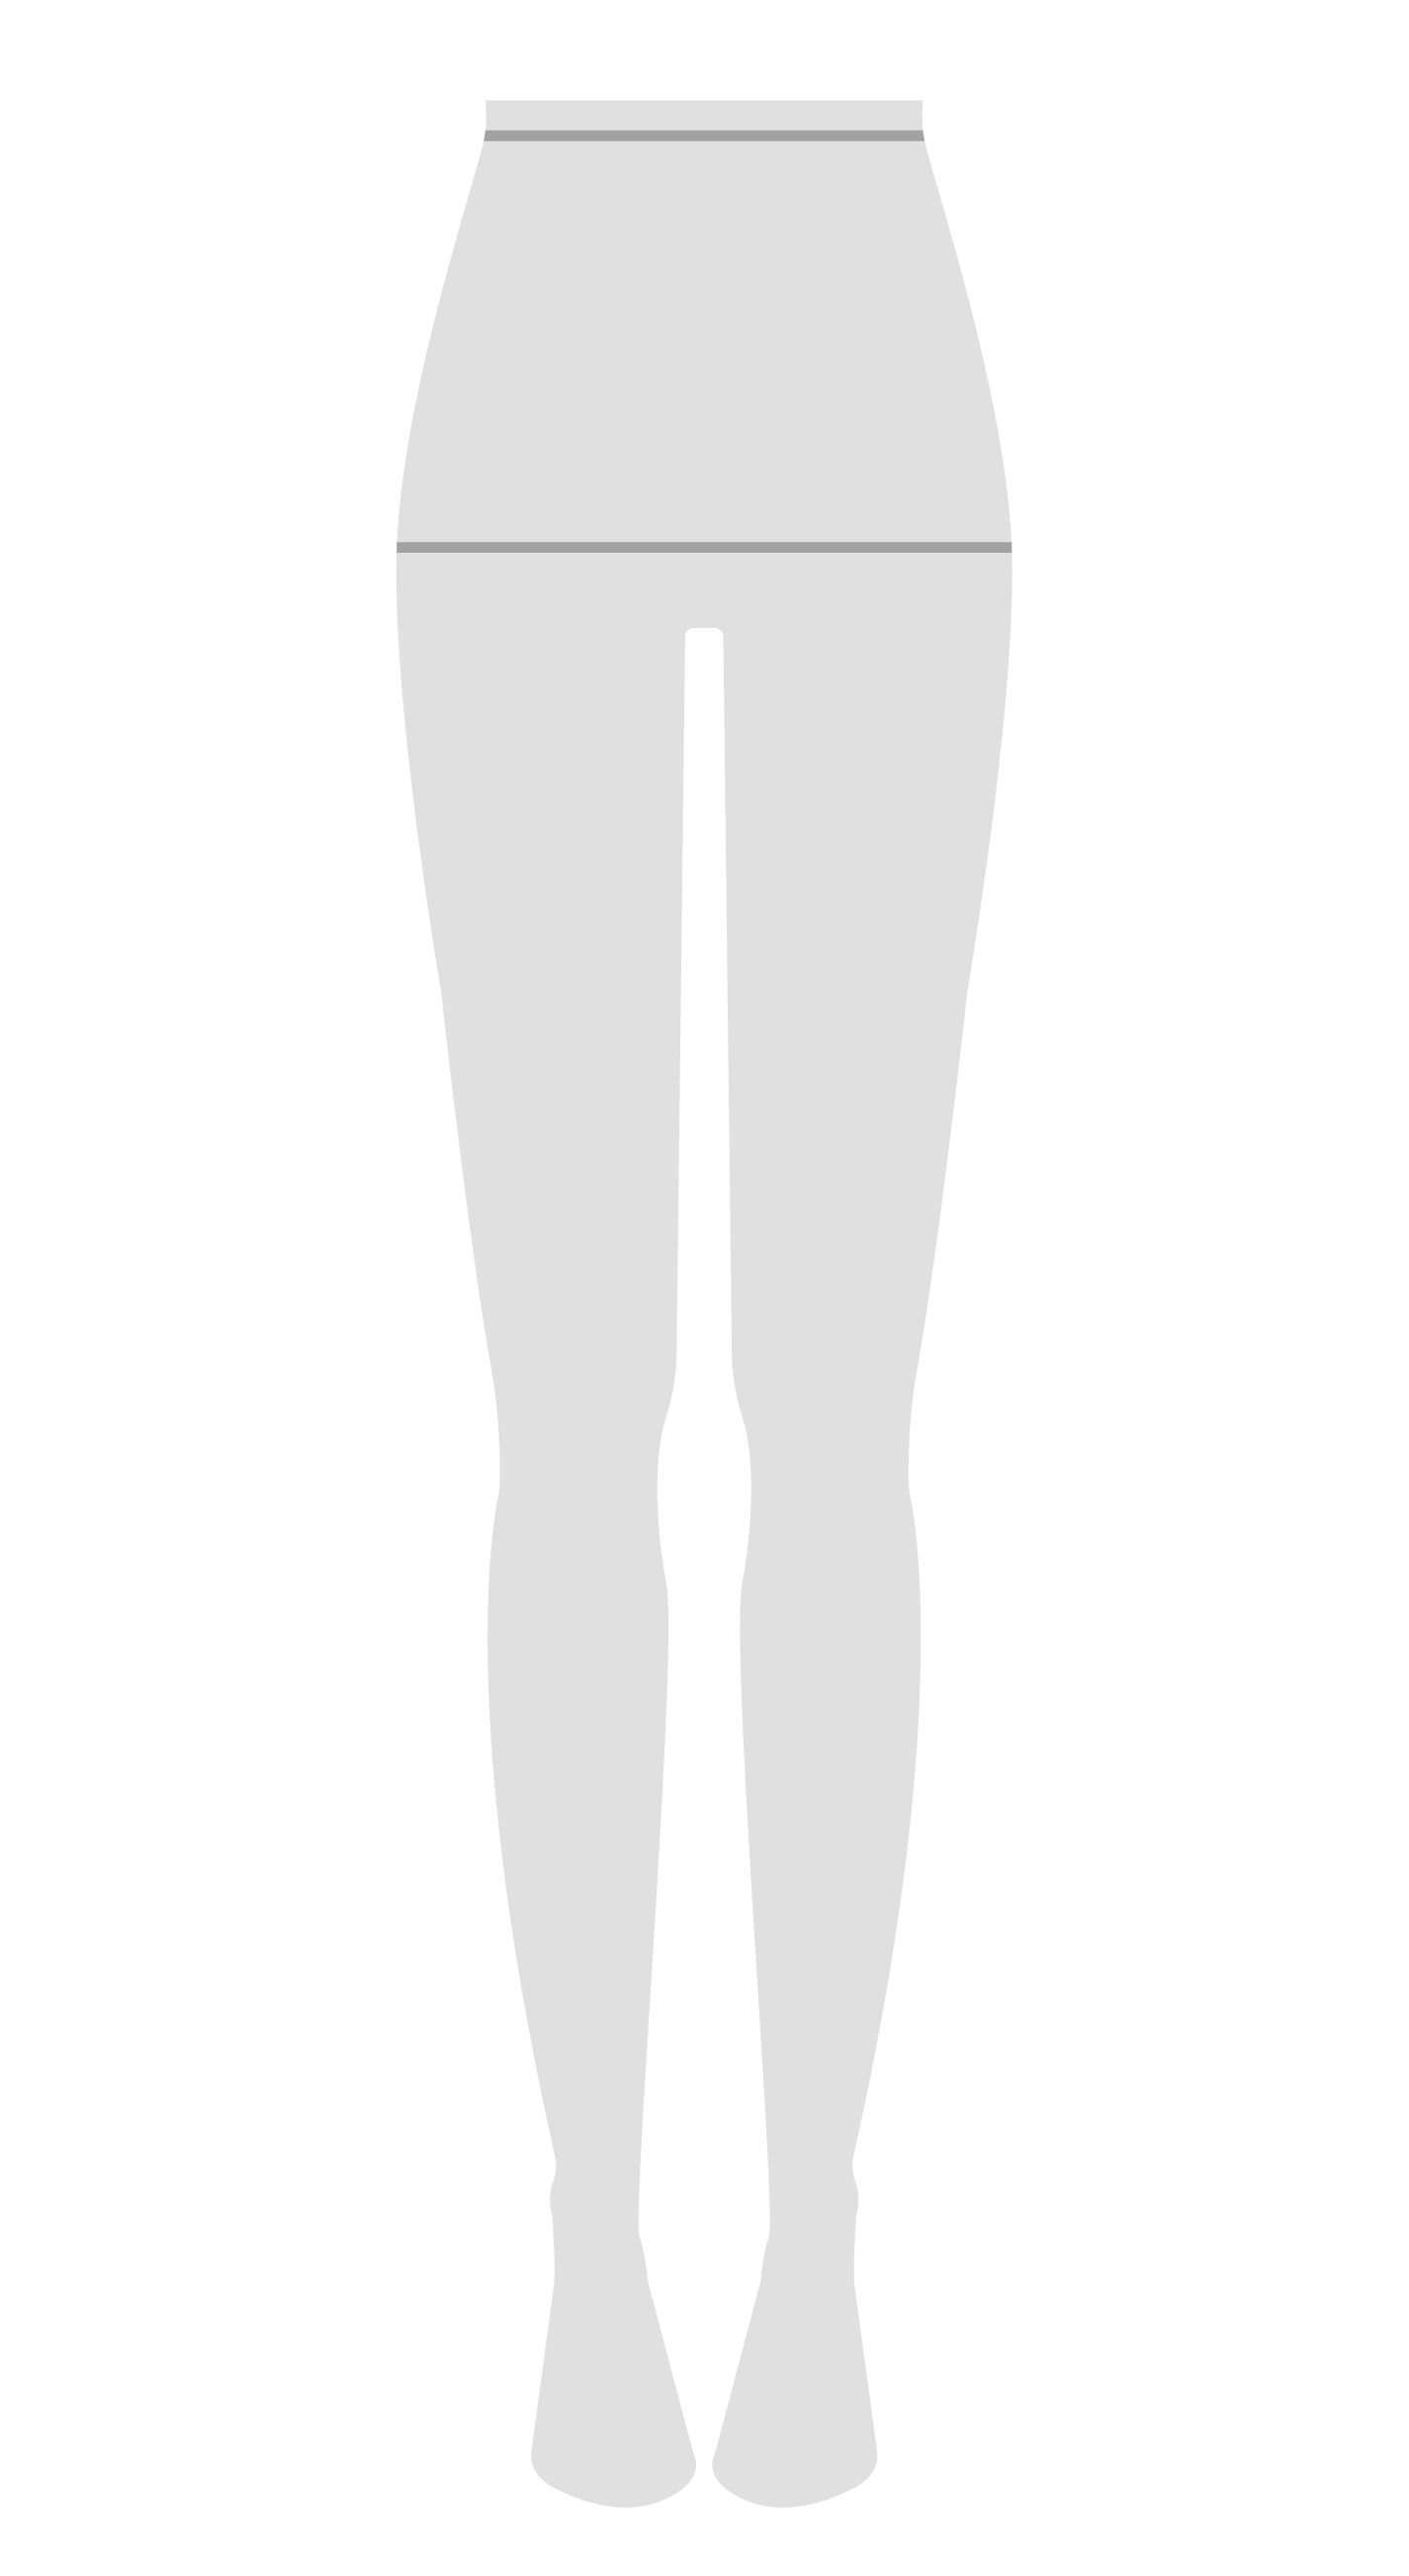 Une silhouette d'un mannequin avec des lignes sur la taille et les hanches indiquant où mesurer.